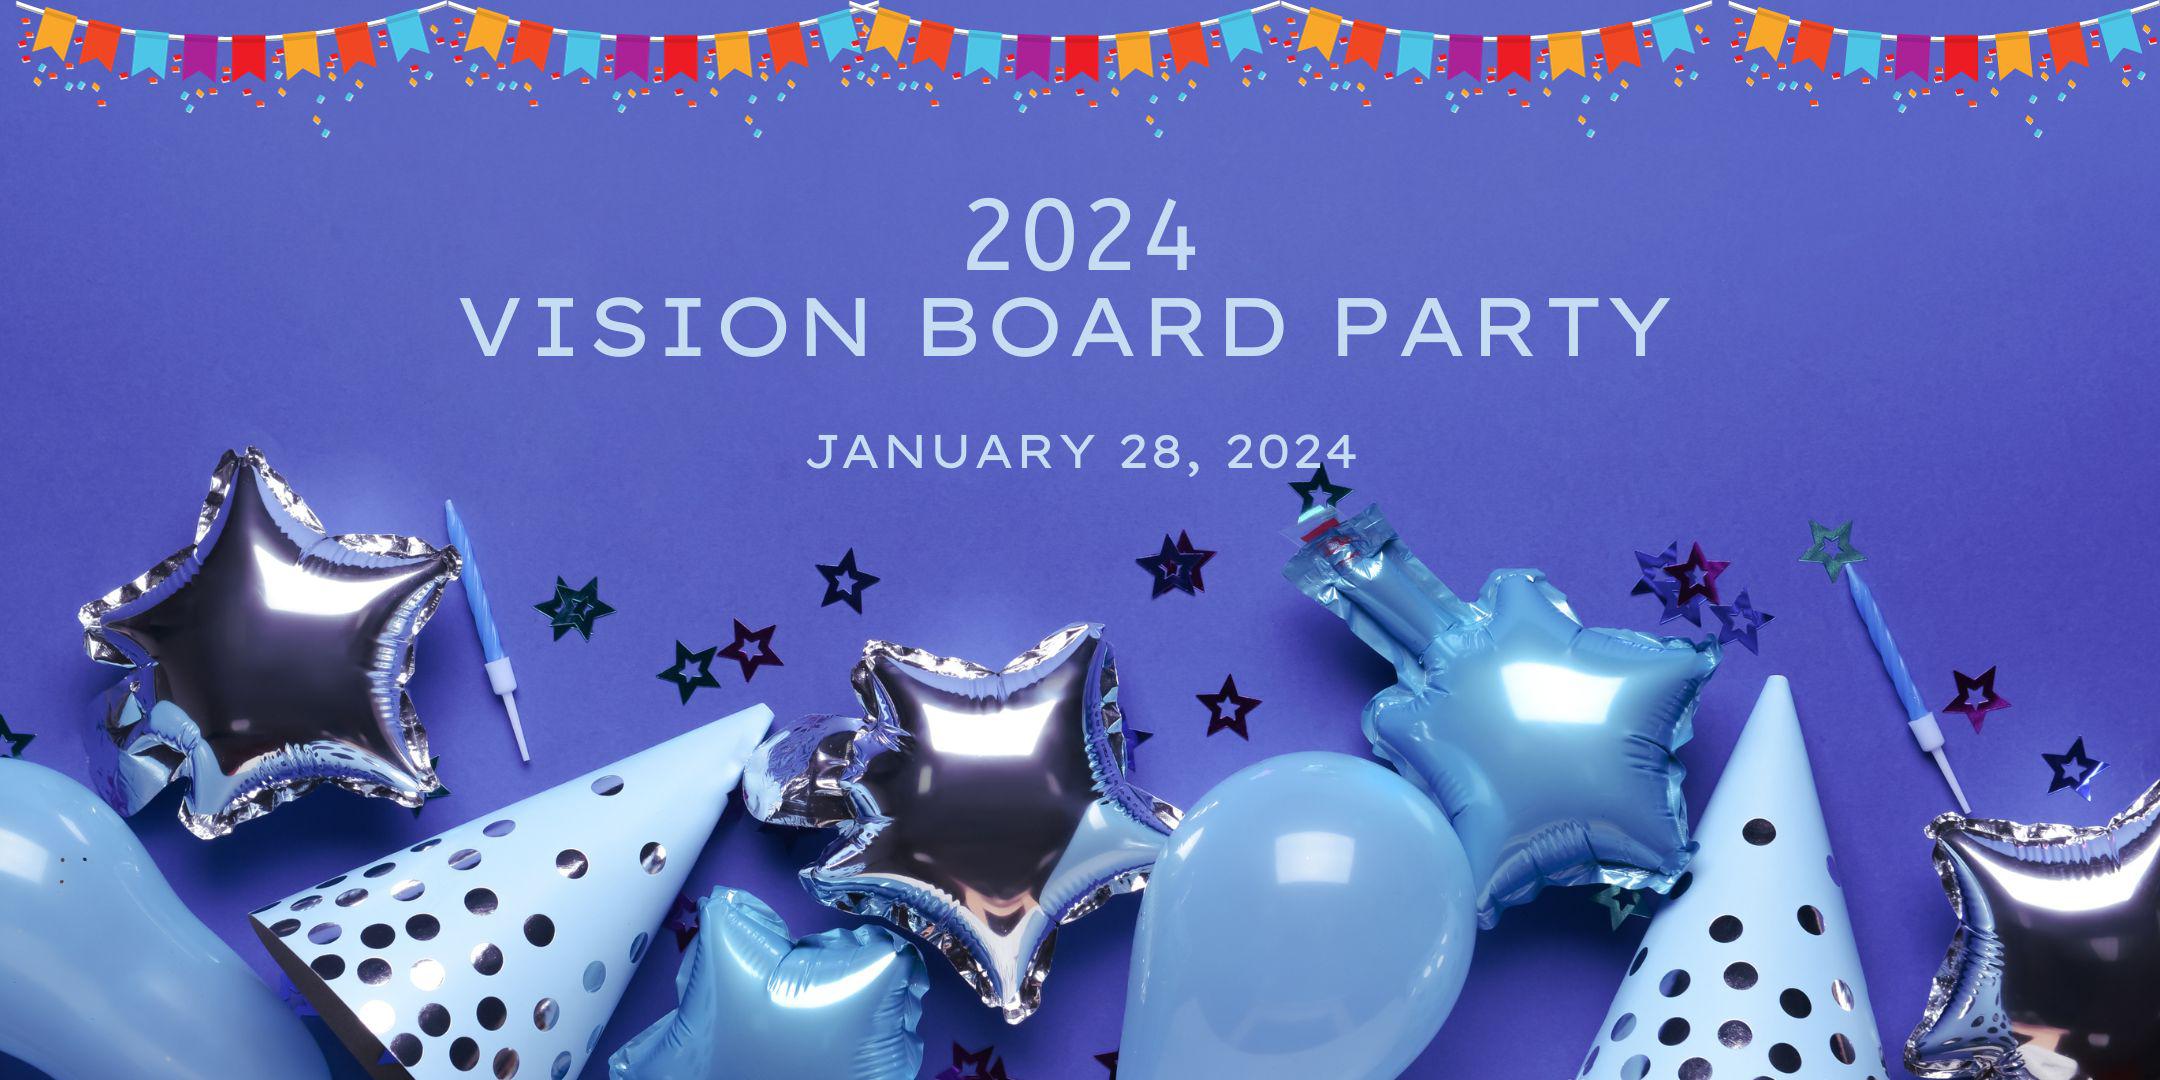 H.O.P.E. Foundation 2024 Vision Board Party Tickets, Sun, Feb 18